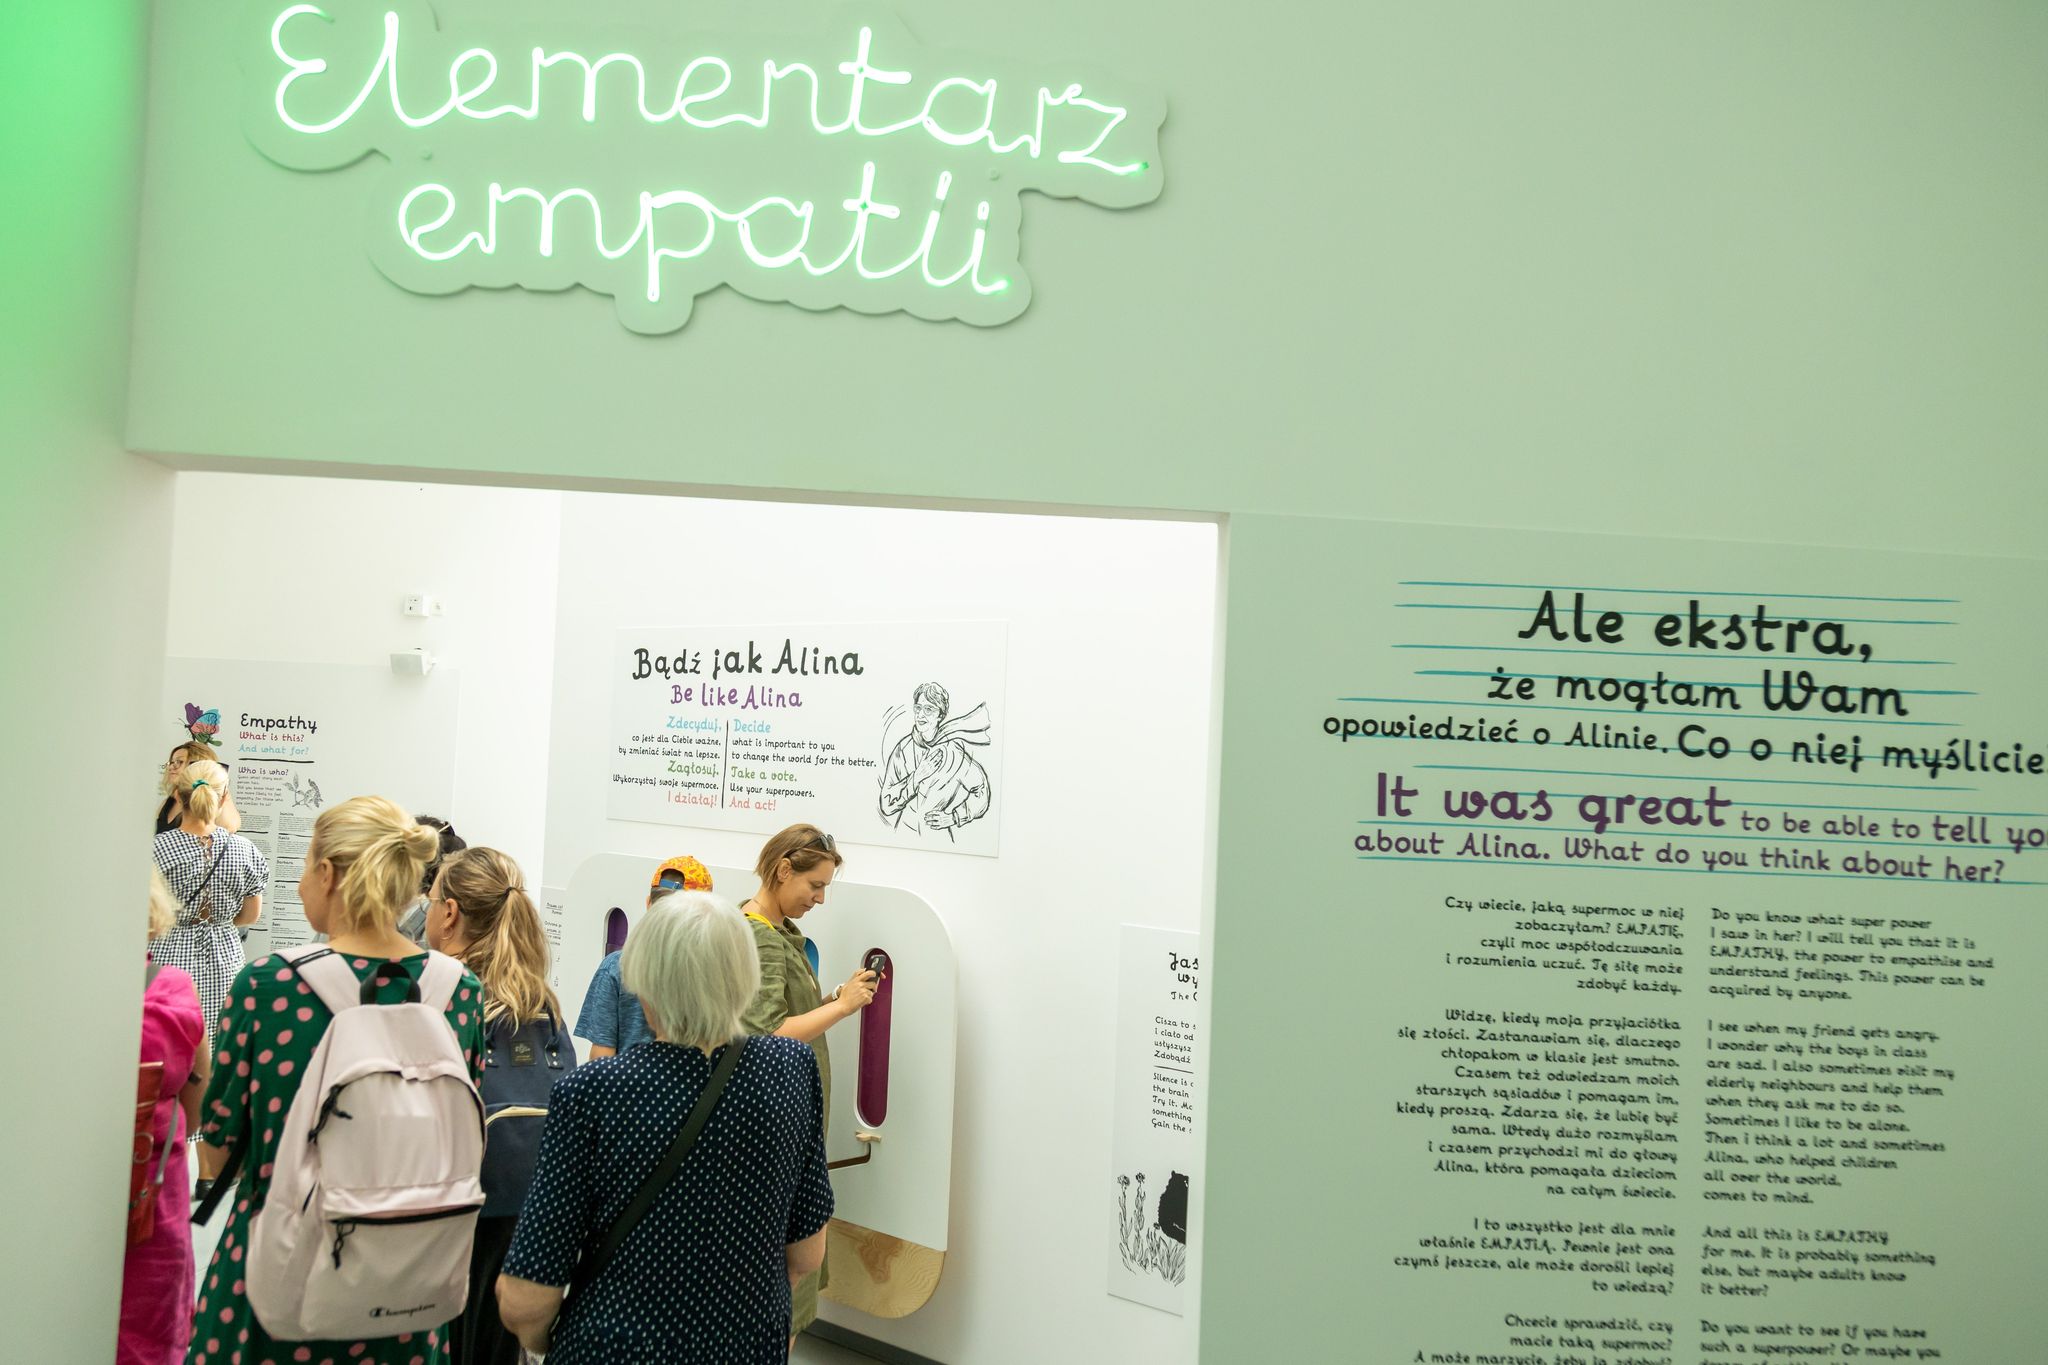 Grupa osób zwiedza wystawę "Elementarz empatii" w Łodzi.